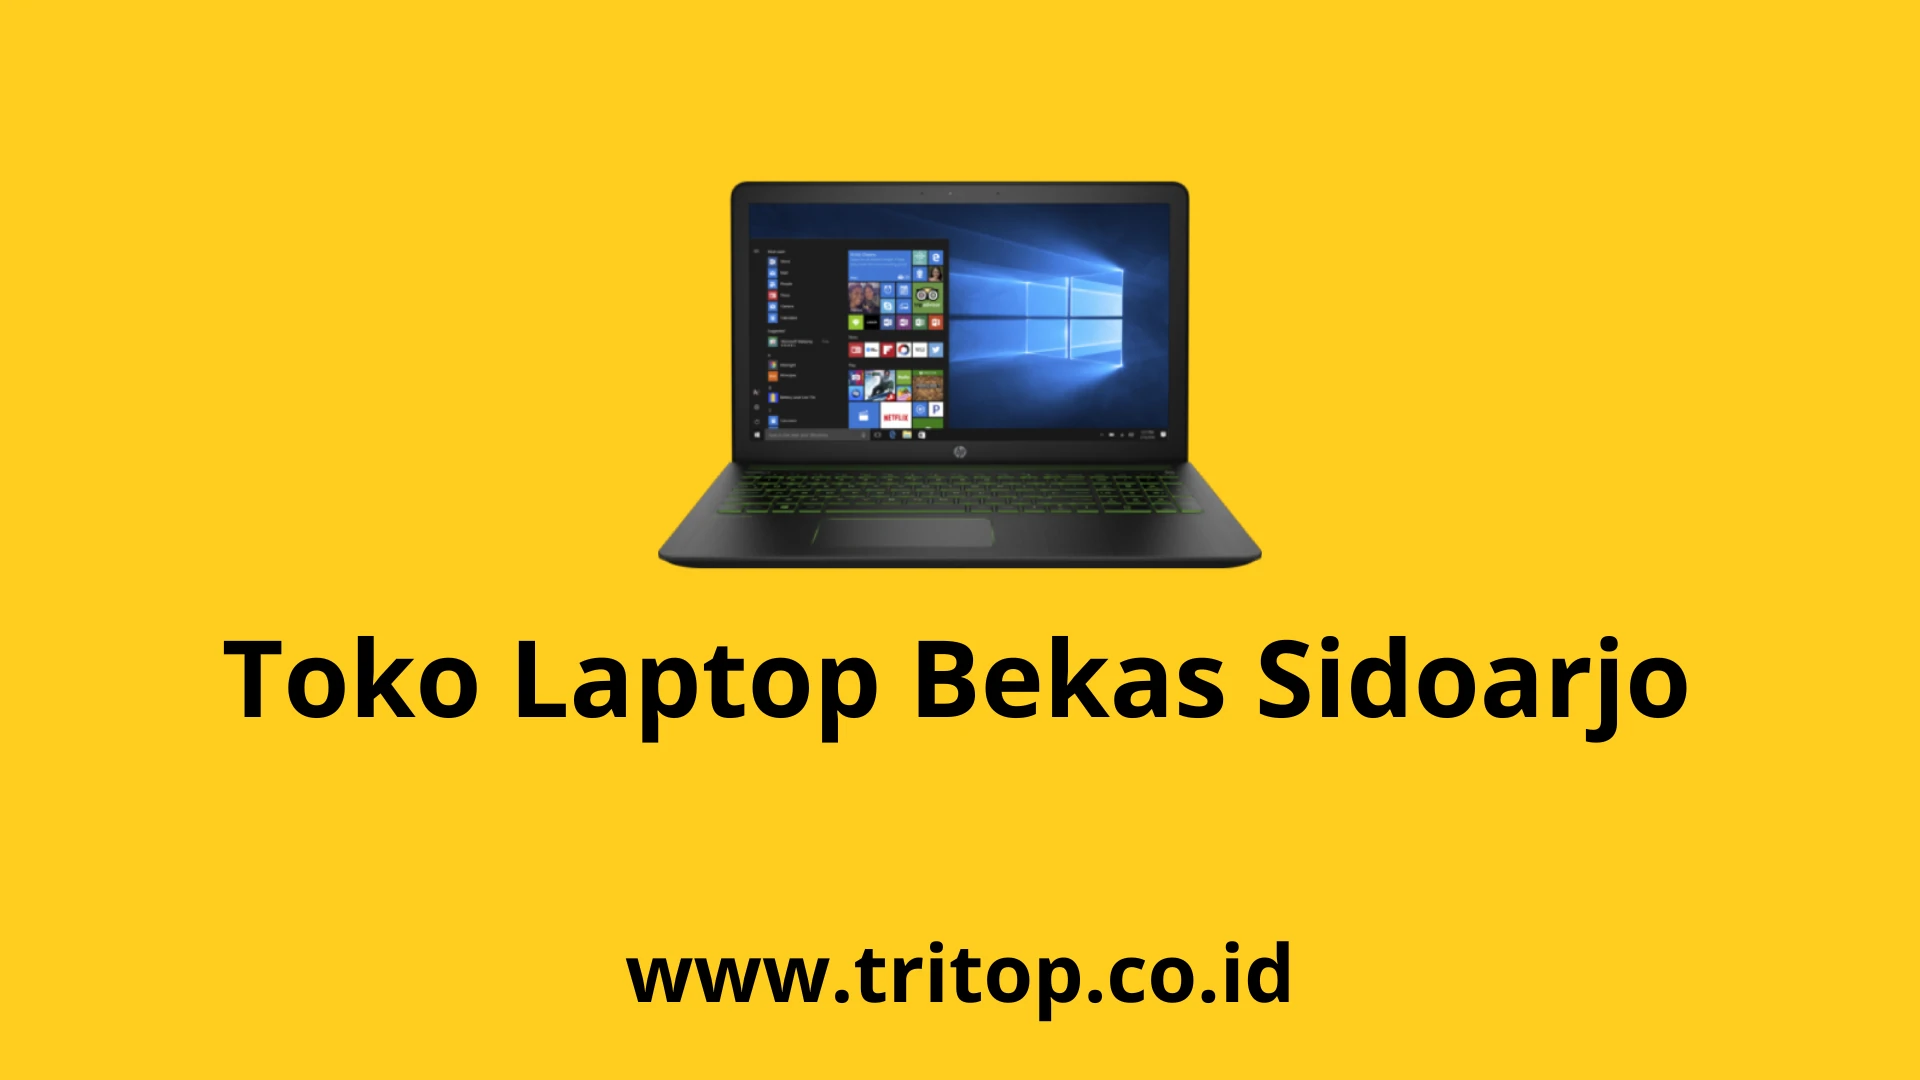 Toko Laptop Bekas Sidoarjo www.tritop.co.id